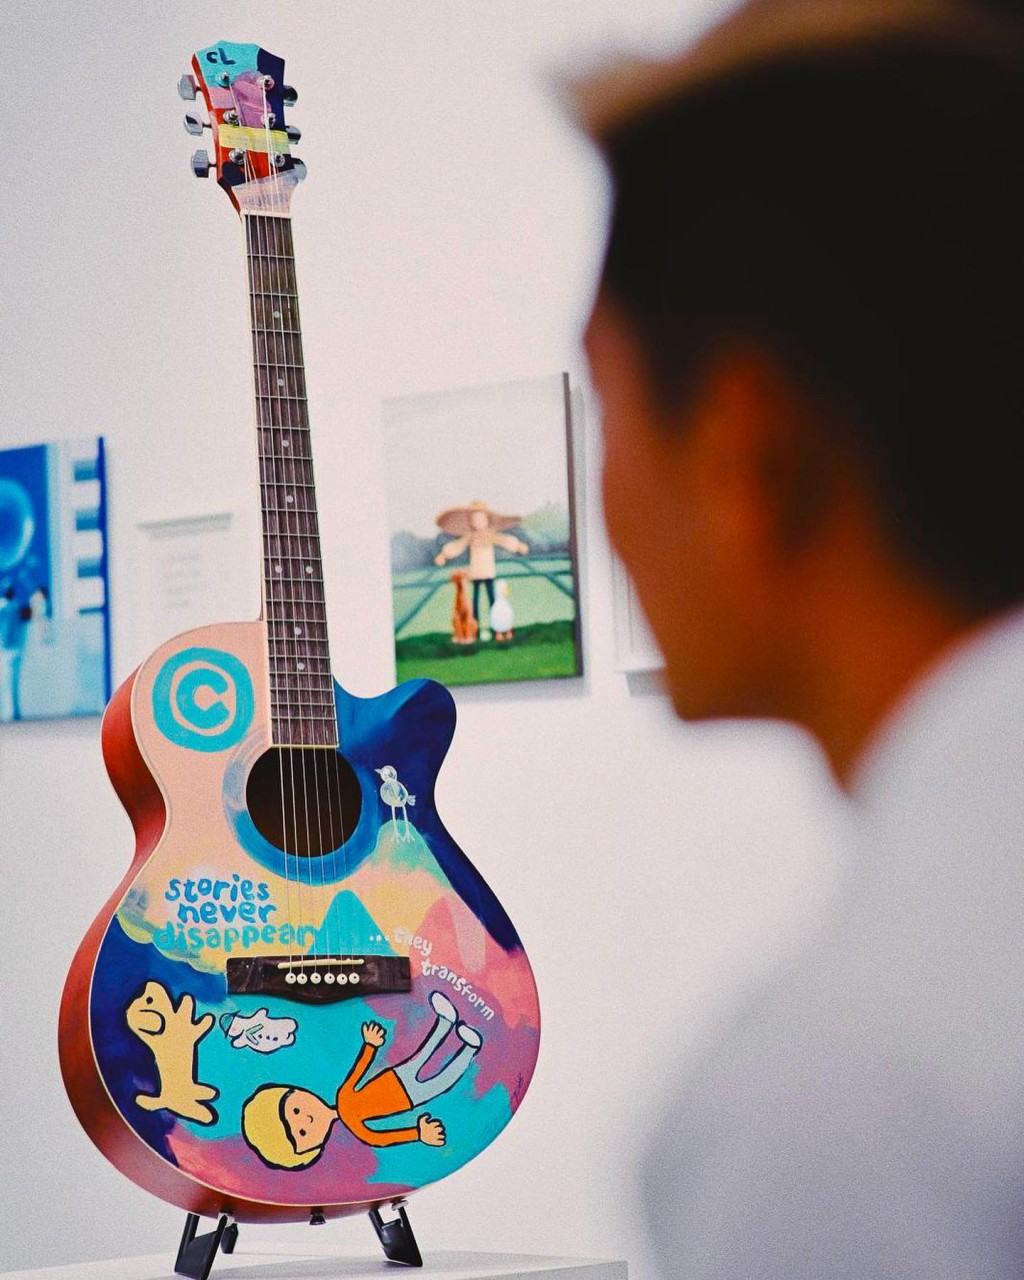 「唱故事的人」展览重头戏—林一峰的一支木吉他（图片来源：Instagram@majorpop.art）